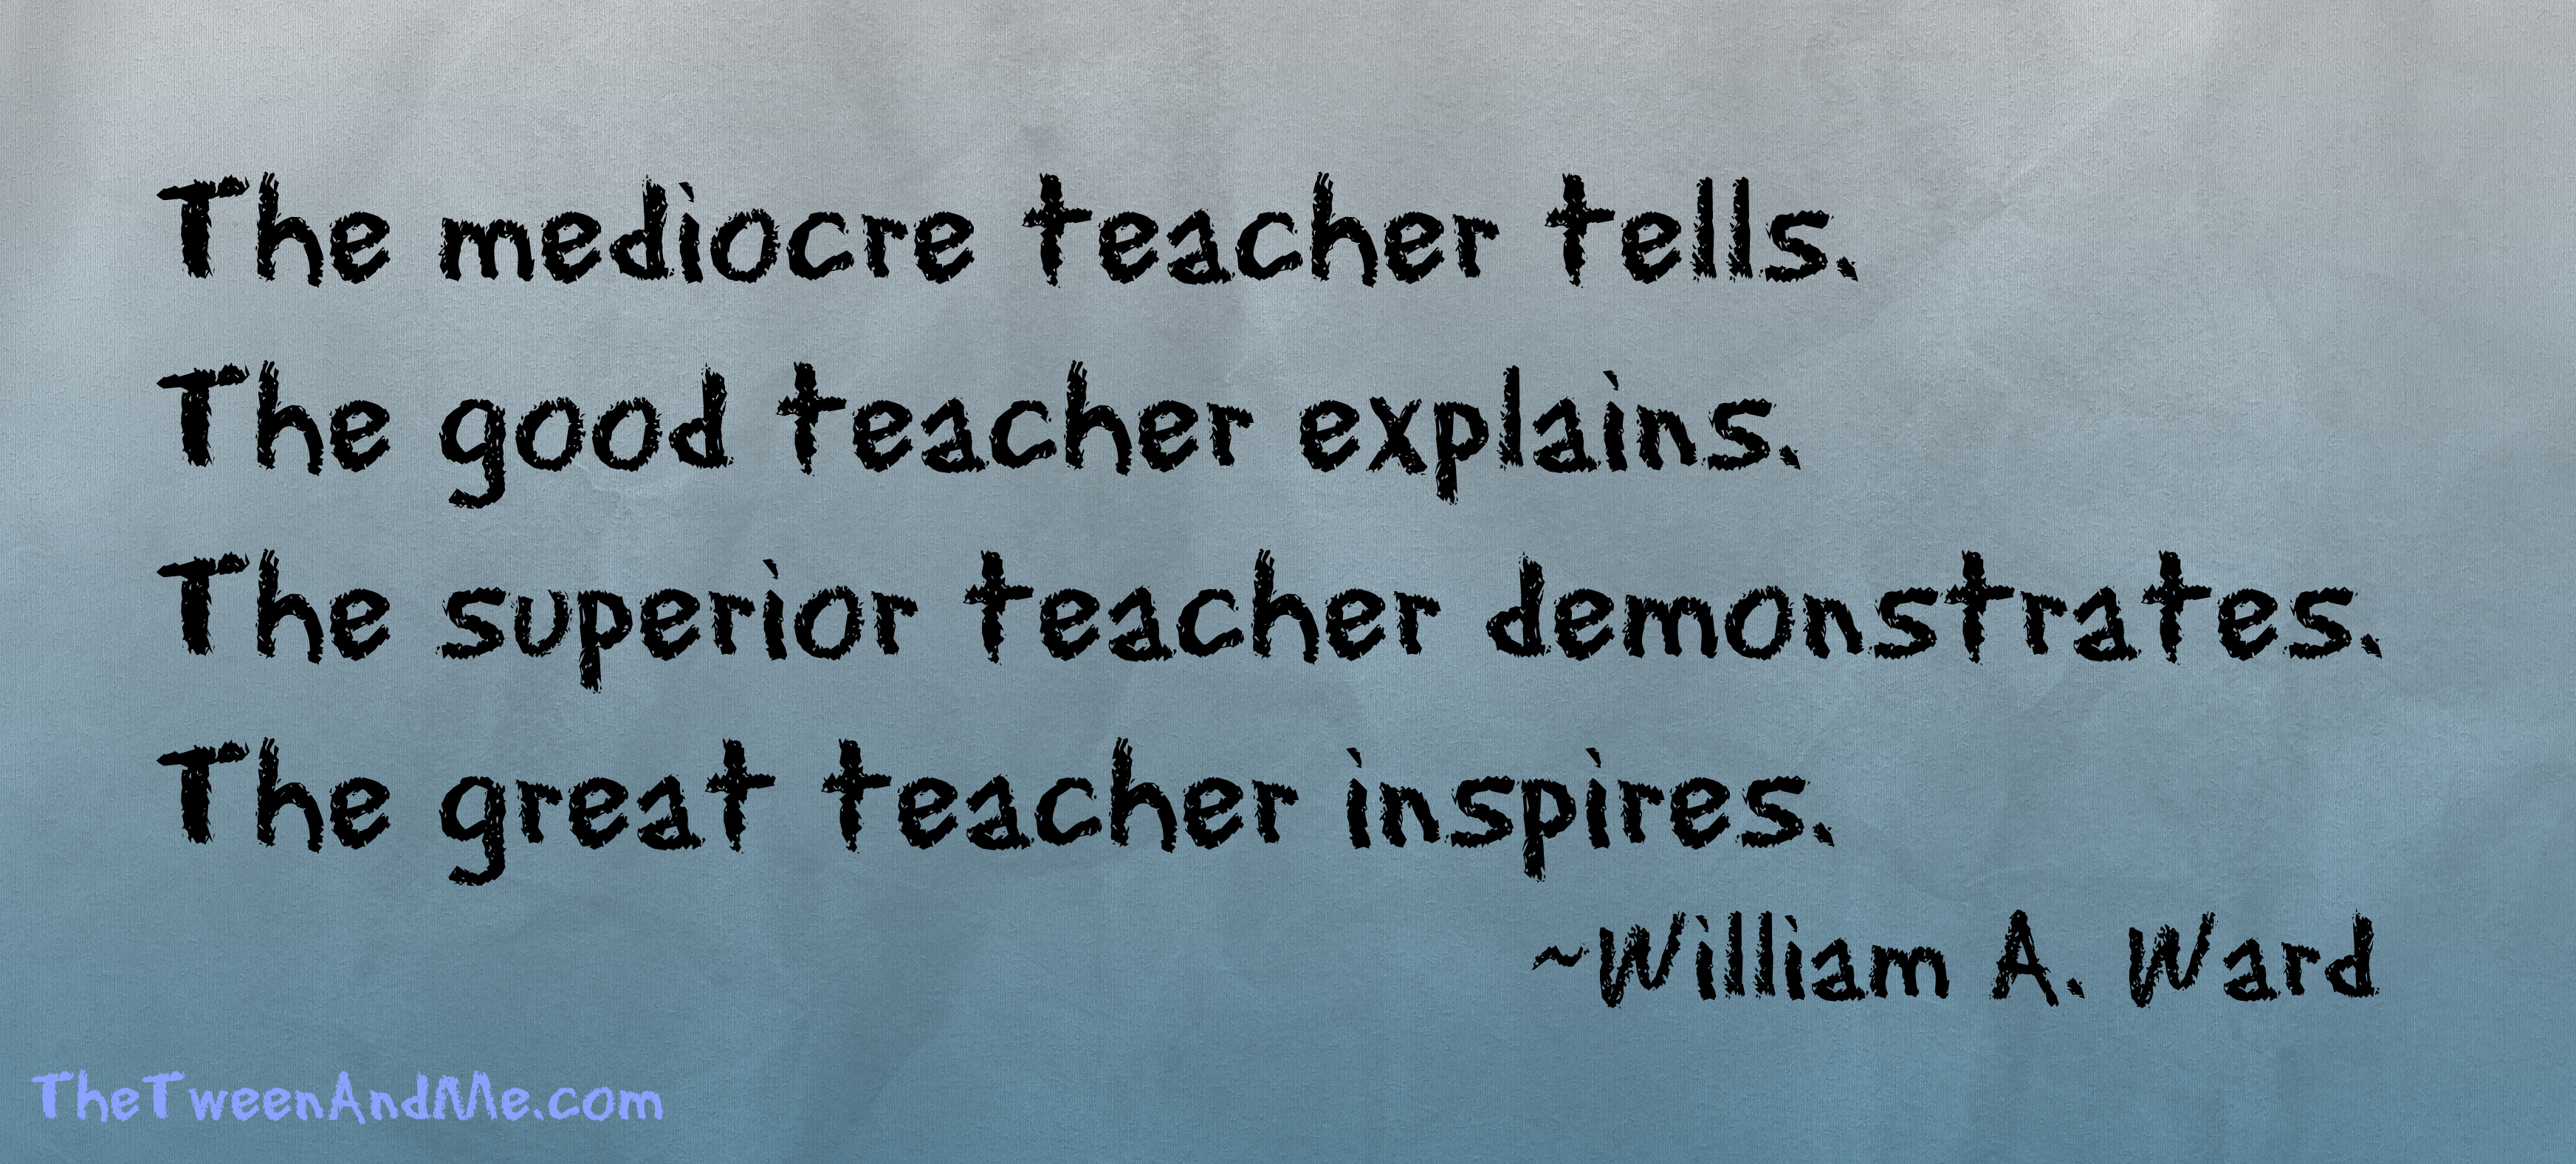 Amazing Teacher Quotes. QuotesGram